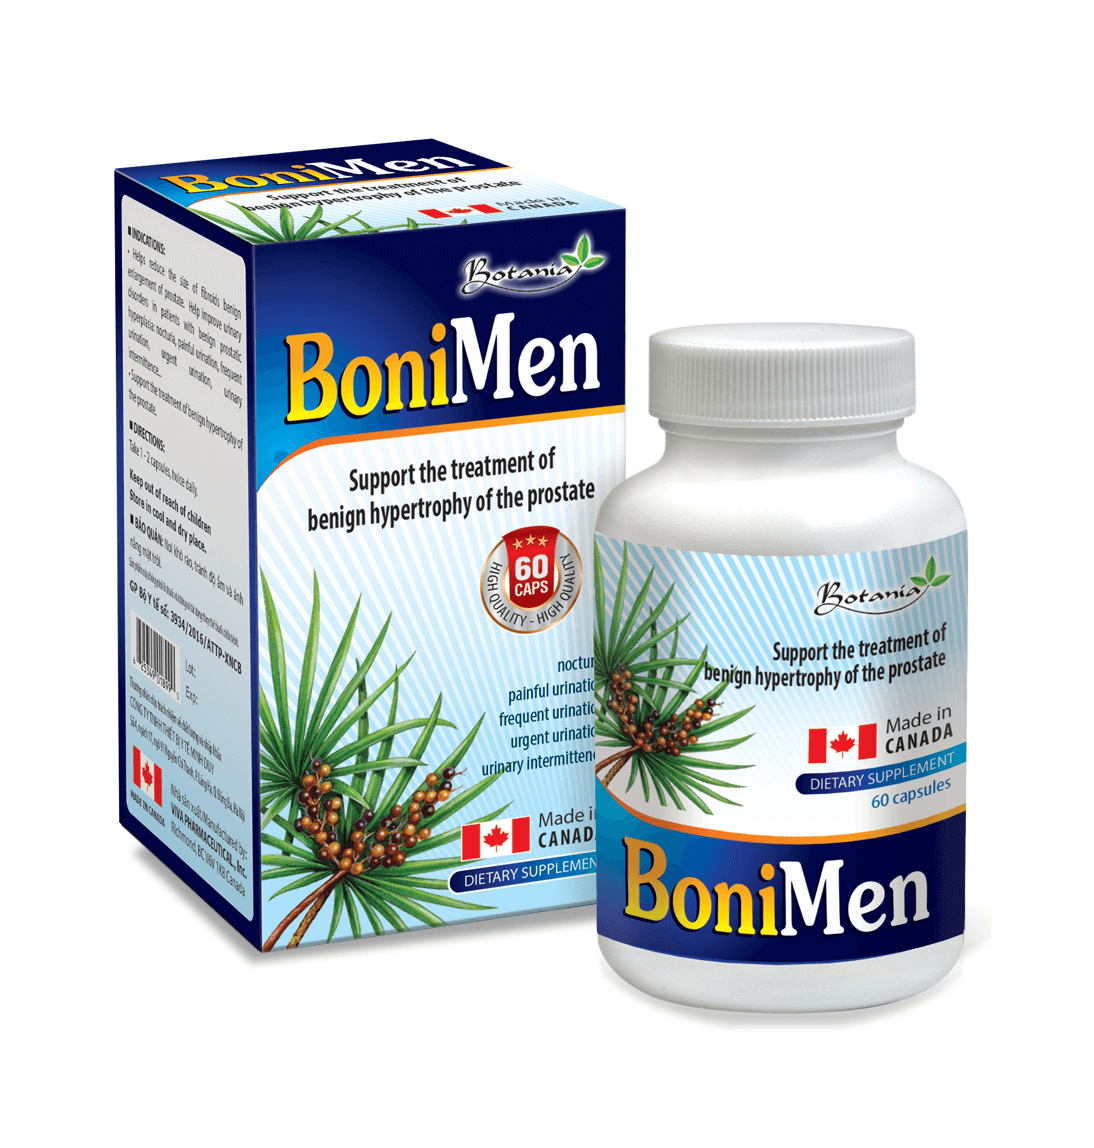  Hình ảnh của sản phẩm BoniMen